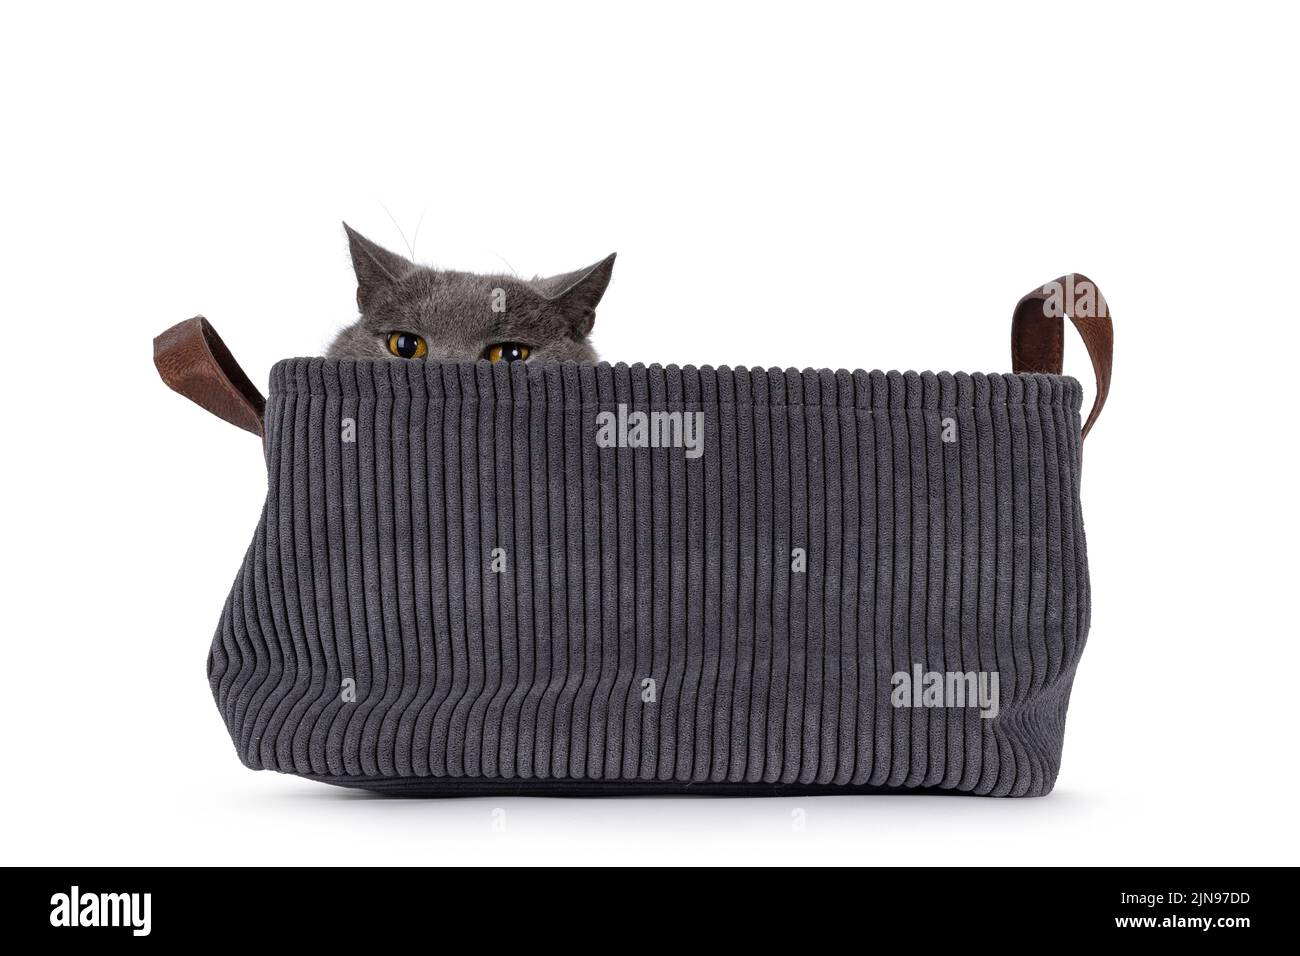 Senior Grumpy Chartreux gato, sentado en la cesta. Se ve molesto por el borde. Aislado sobre un fondo blanco. Foto de stock